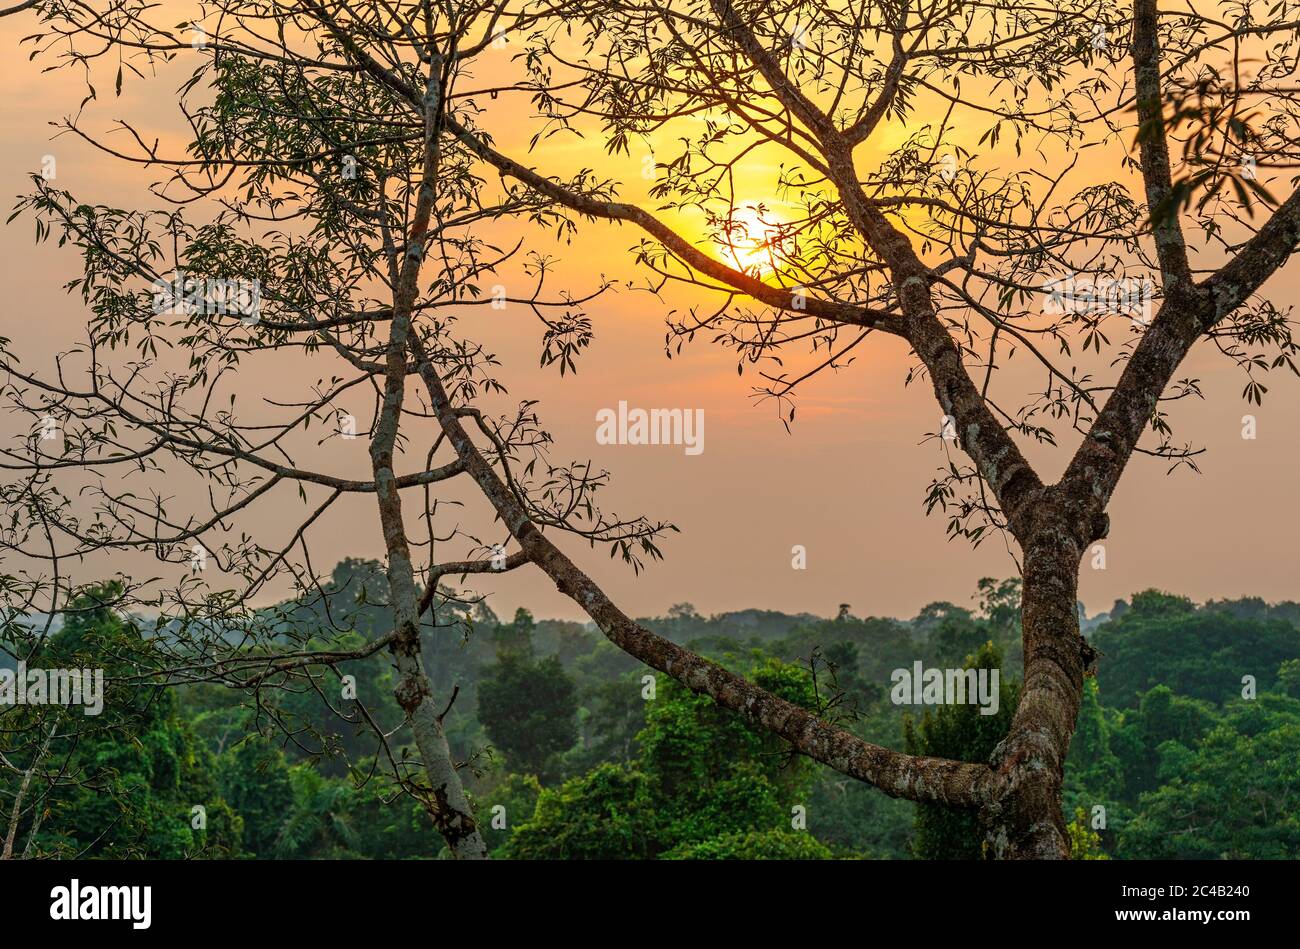 Paesaggio della foresta pluviale aerea di Amazon al tramonto comprendente i paesi Brasile, Perù, Ecuador, Suriname, (francese) Guyana, Bolivia, Venezuela, Colombia. Foto Stock